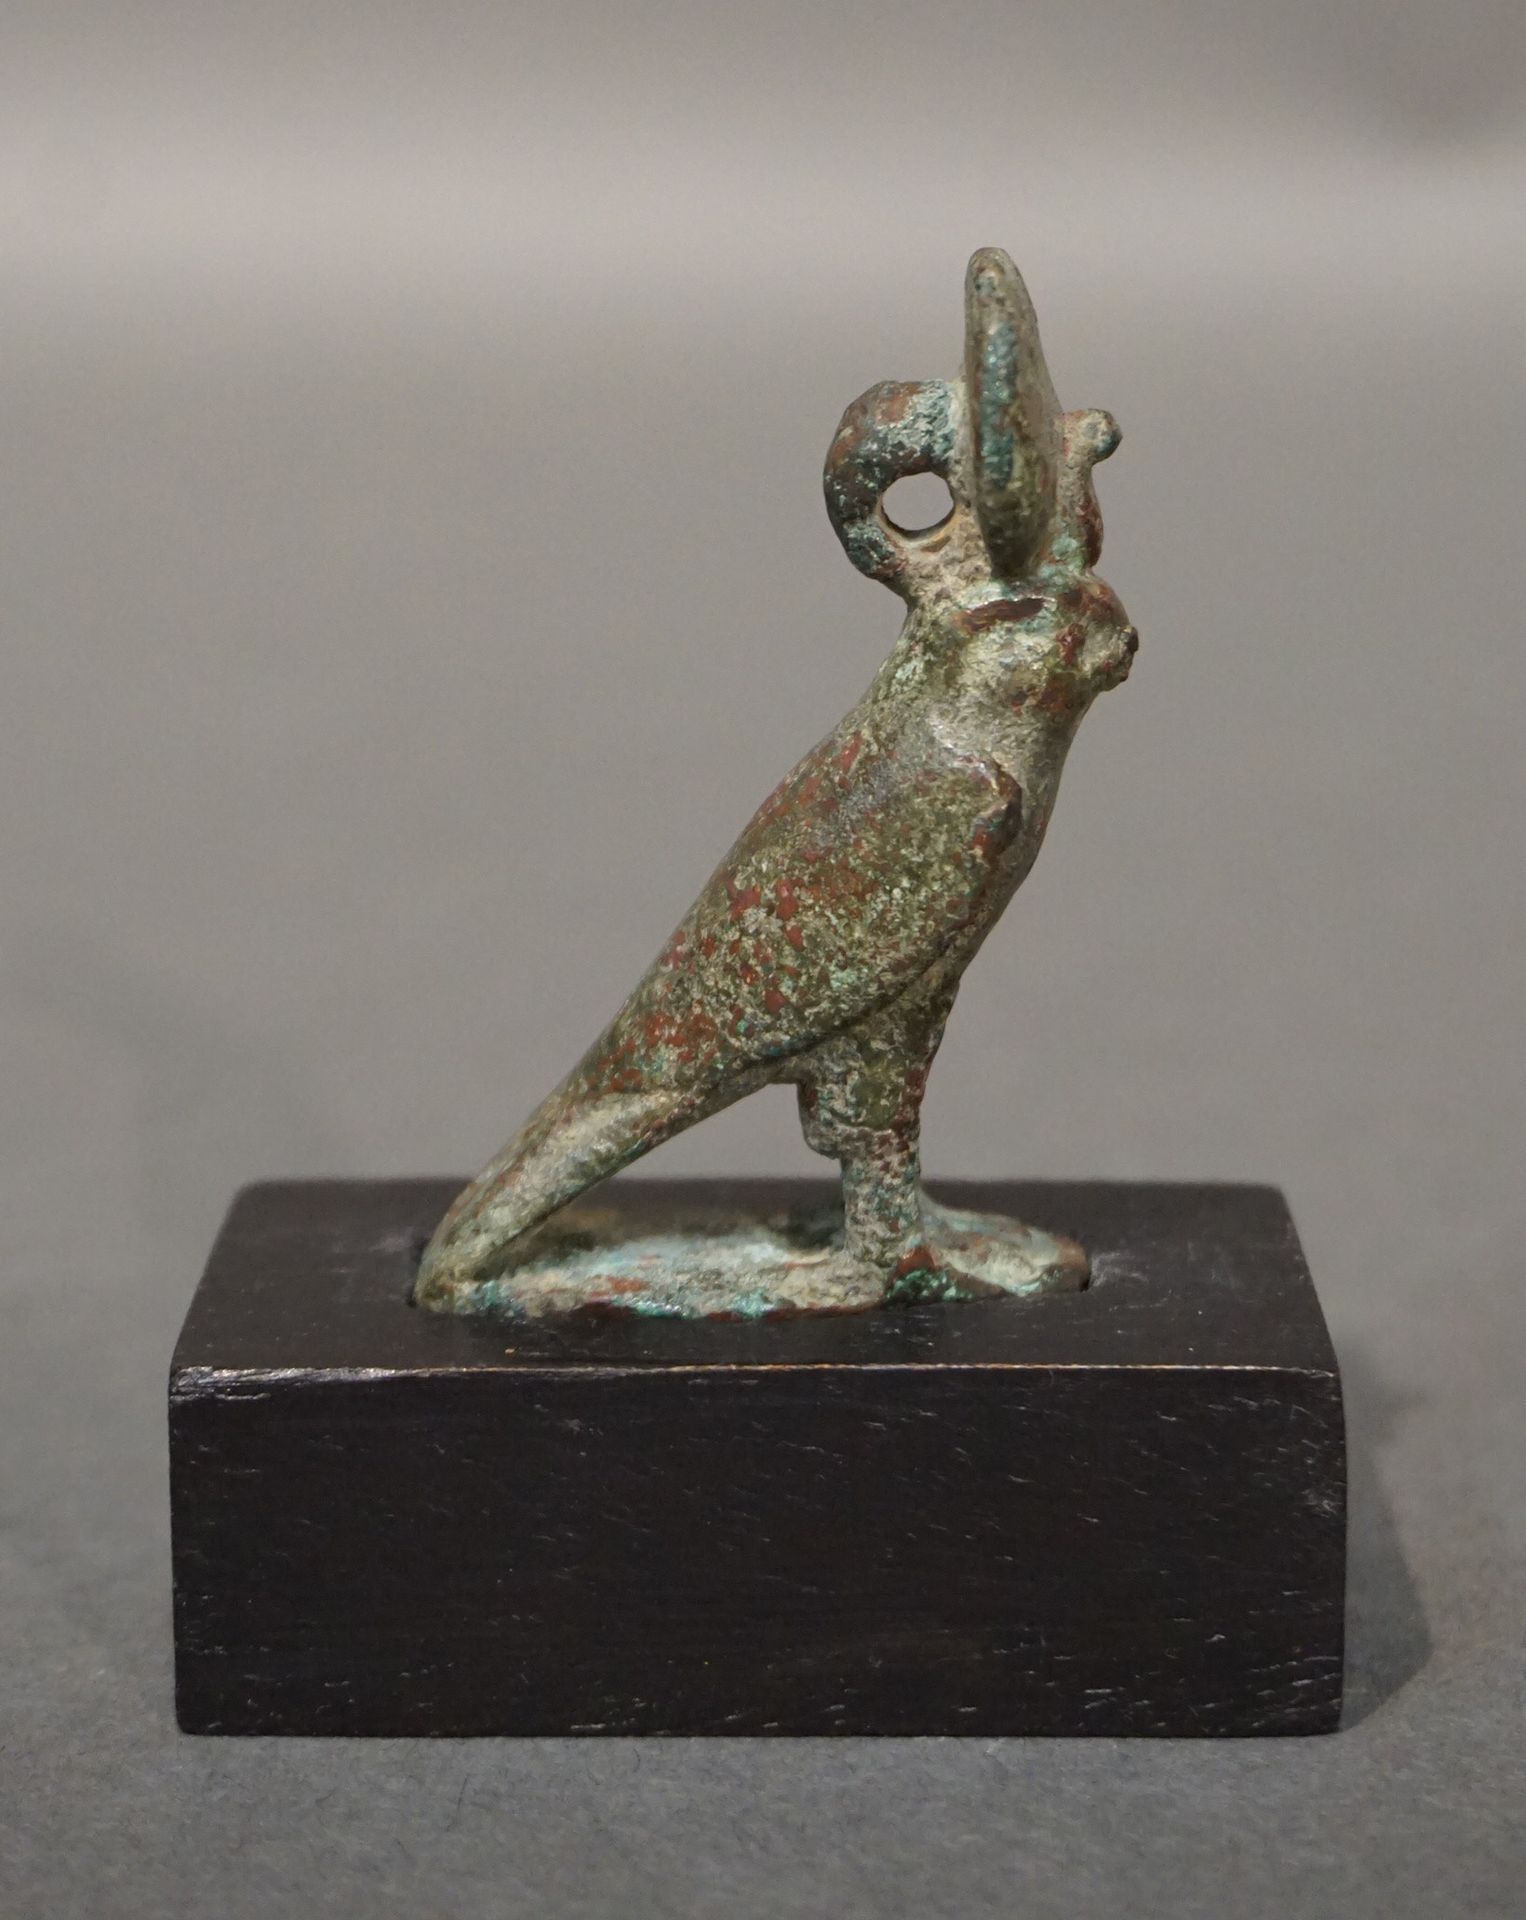 Null 荷鲁斯的雕像，呈猎鹰状。太阳盘背面的悬吊夹。青铜，带有光滑的绿色铜锈。右腿部分缺失。埃及，晚期或托勒密时期，公元前664-32年 高5.6厘米